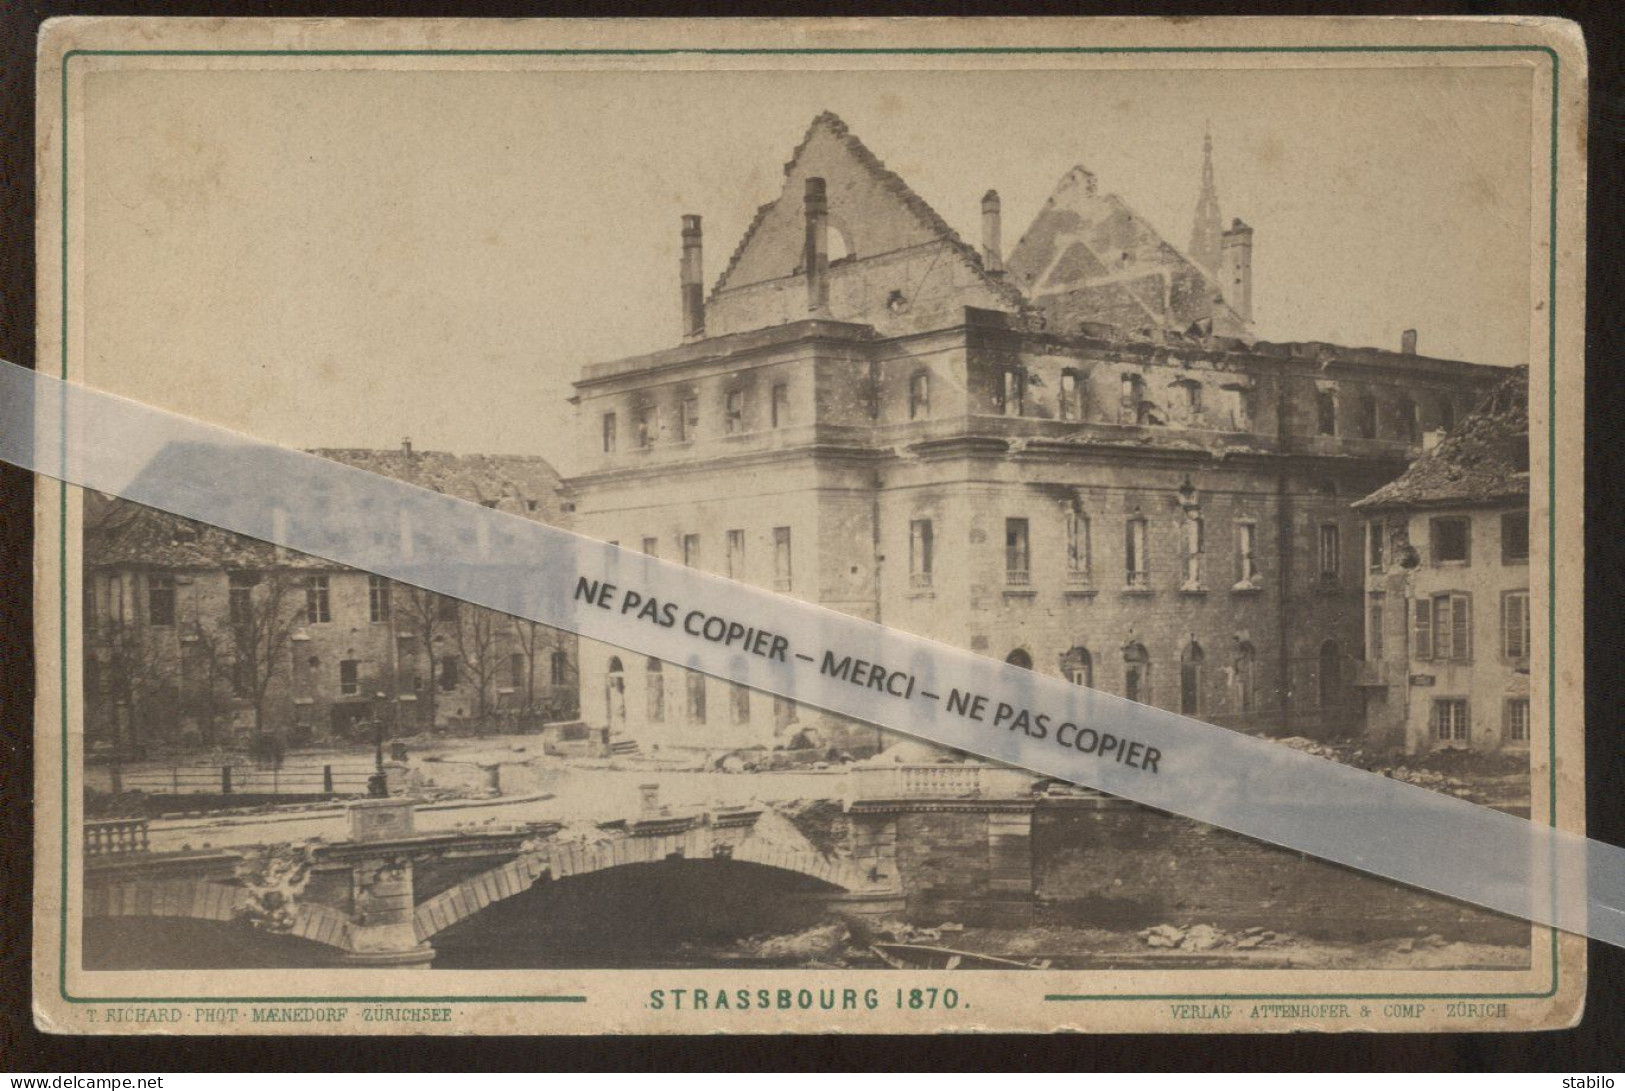 GUERRE DE 1870 - STRASBOURG - PHOTO DE LA DESTRUCTION DU THEATRE ET DU PONT DU 31 DECEMBRE 1870 - FORMAT 16.5 X 11 CM - Guerre, Militaire